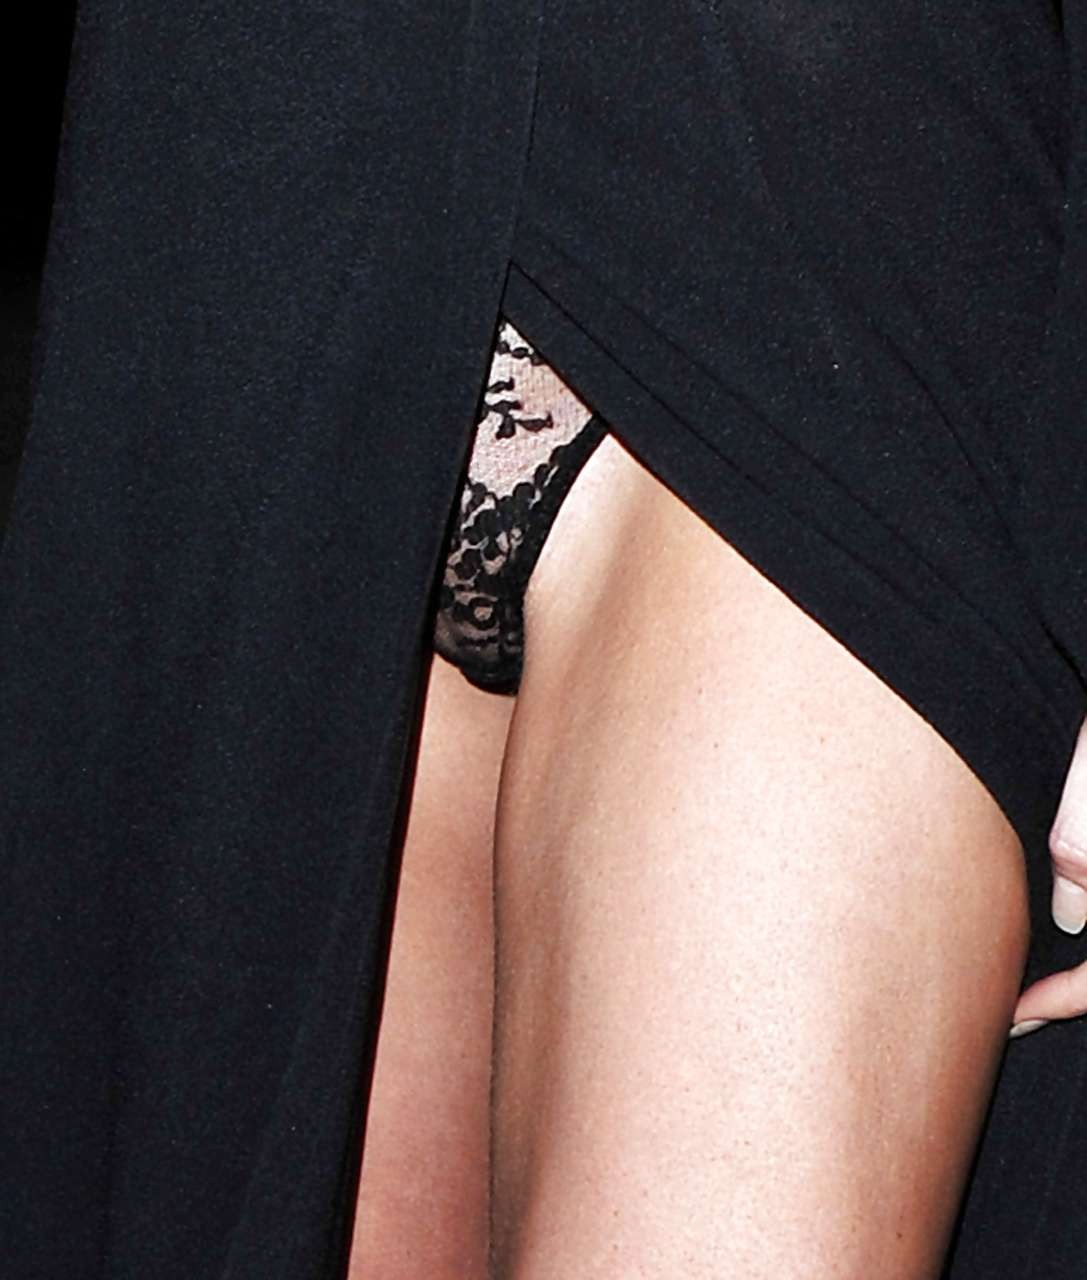 Abigail clancy montre sa culotte et ses jolis seins dans une robe noire transparente.
 #75296085